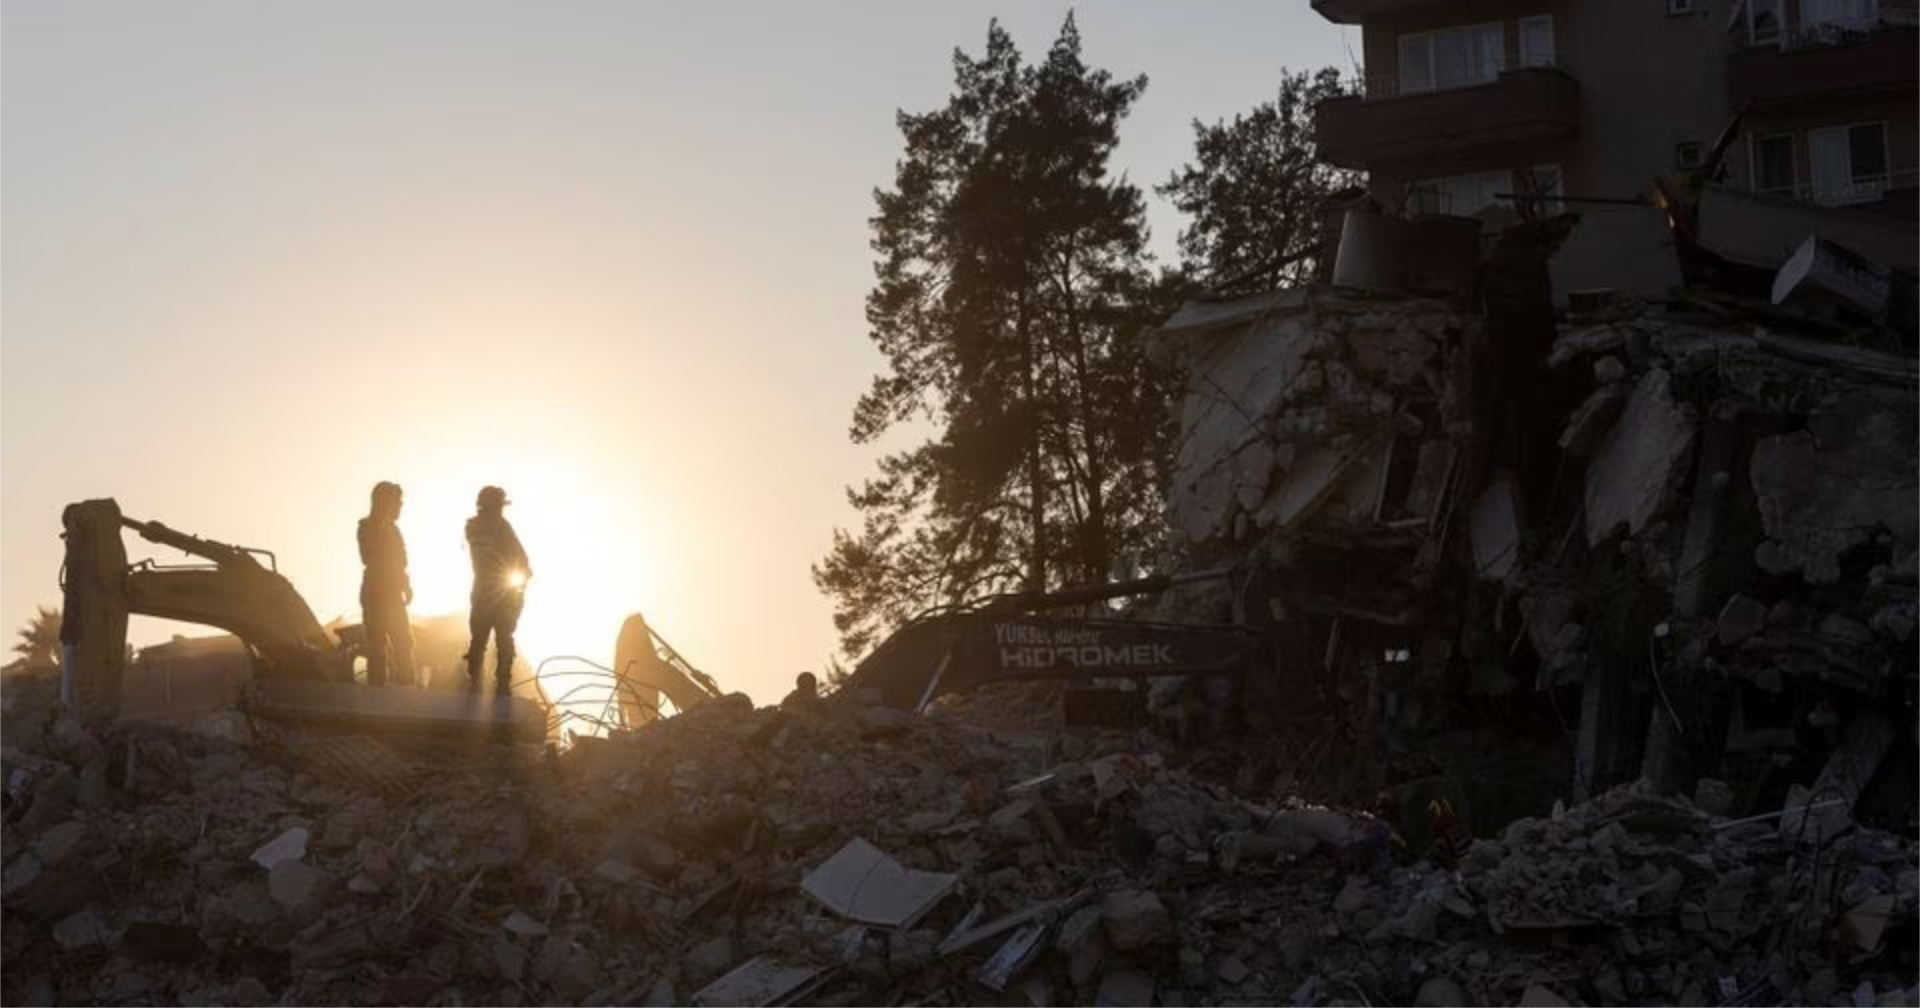 ตุรกี – ซีเรีย แจ้งยุติการค้นหาผู้รอดชีวิต หลังปฏิบัติภารกิจมานาน 2 สัปดาห์